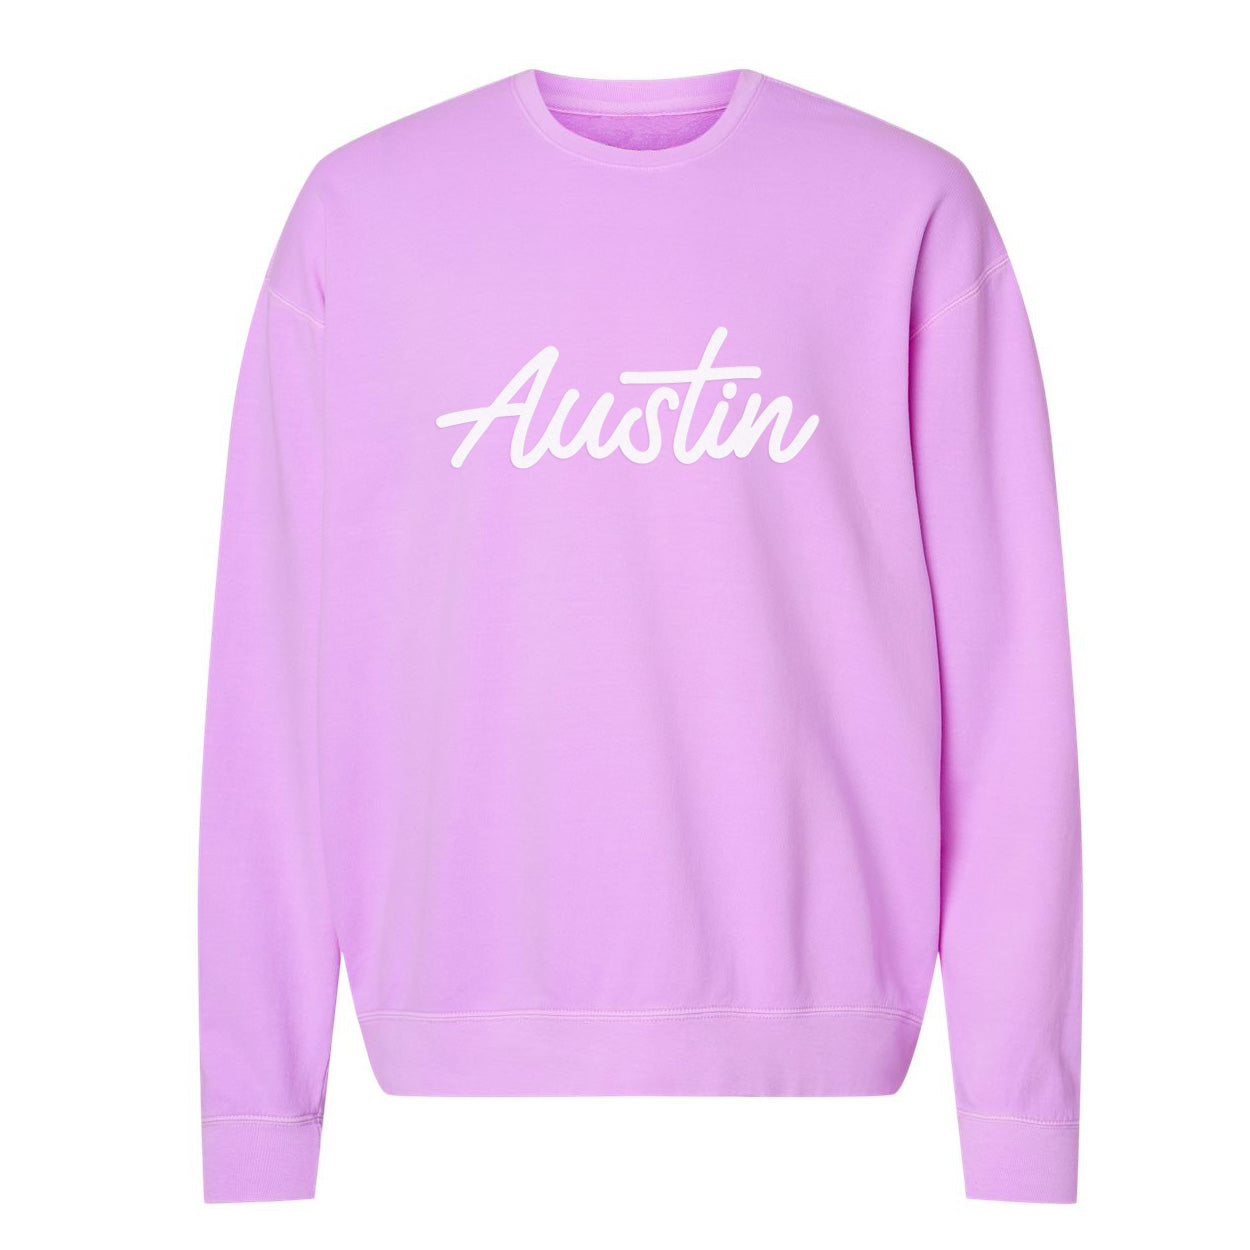 Austin Cursive Washed Sweatshirt